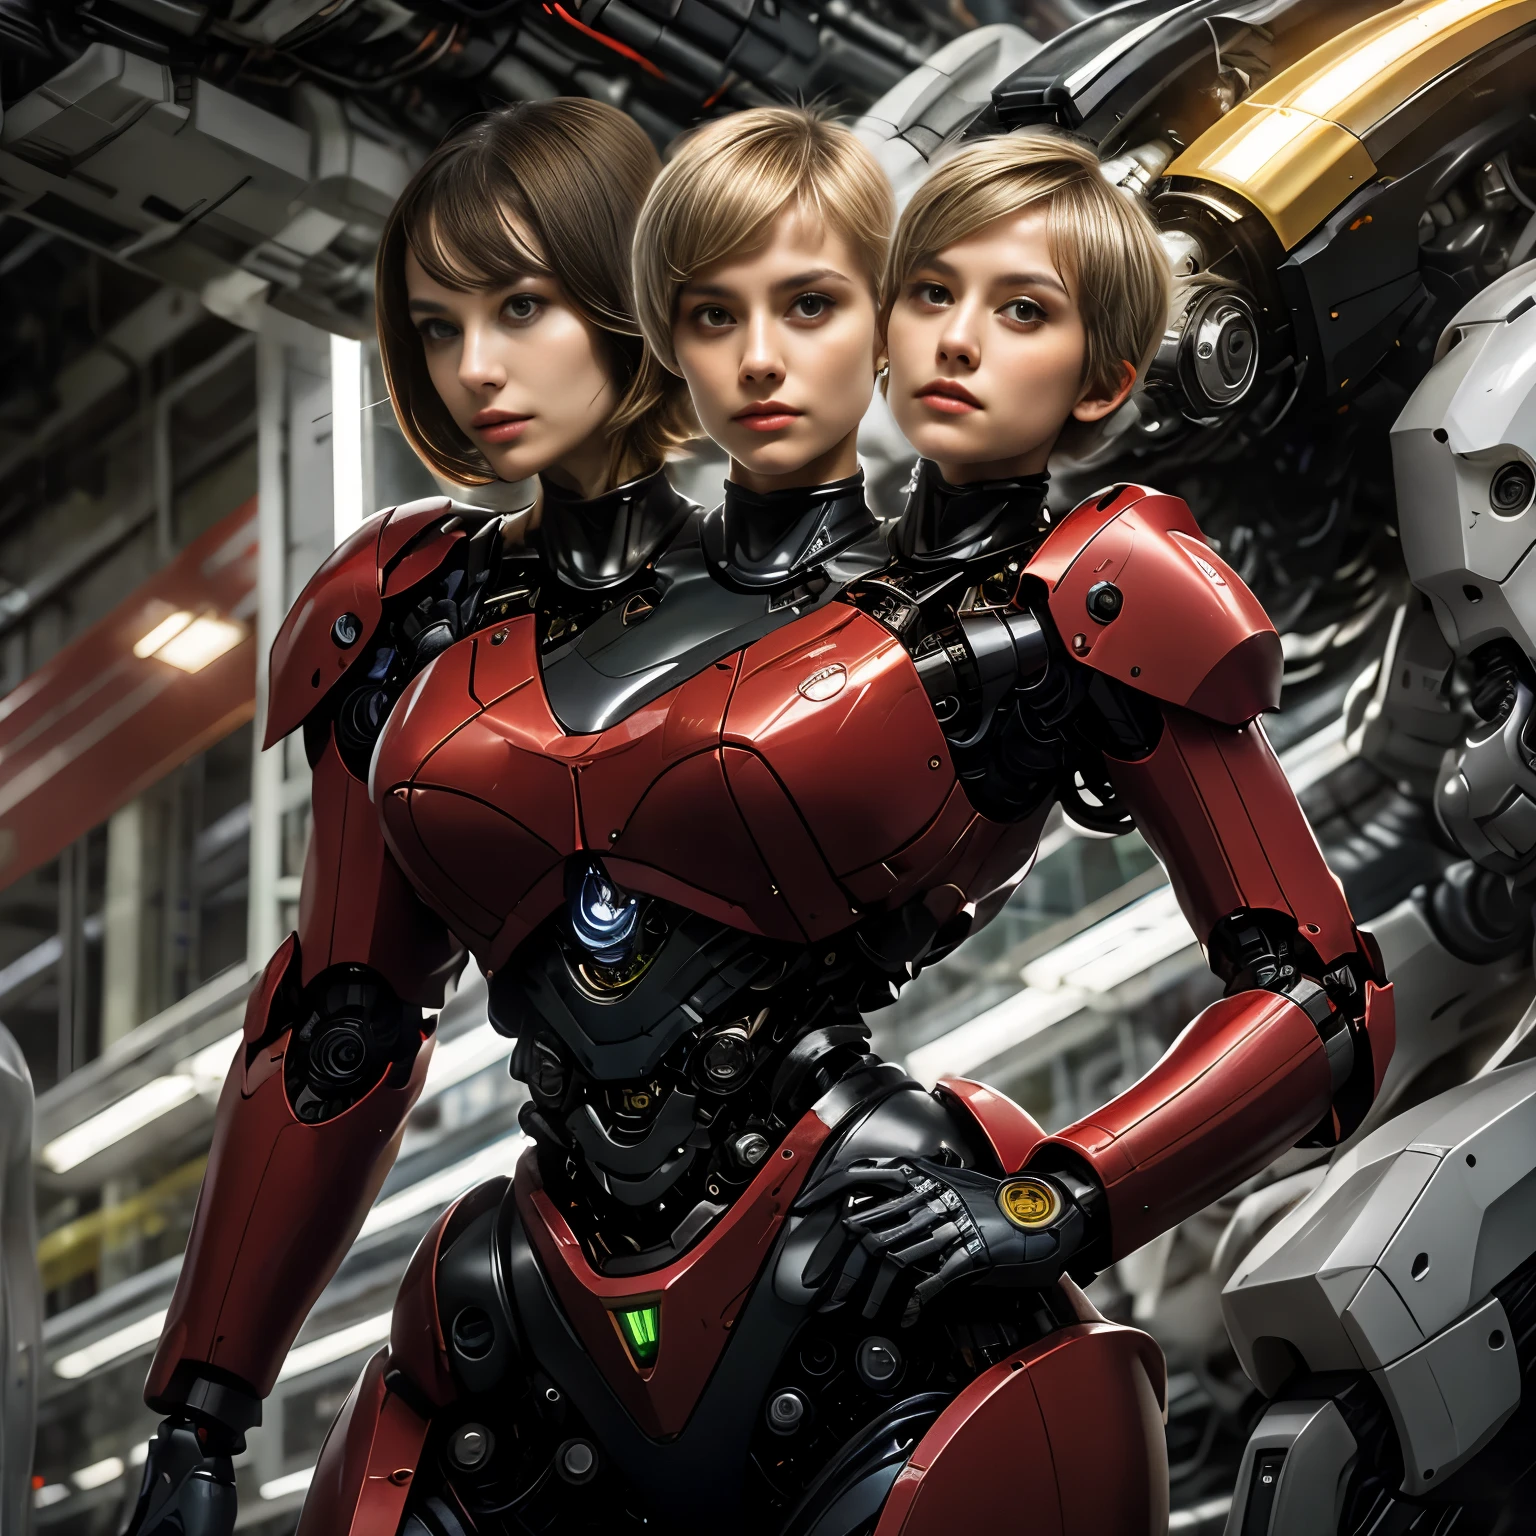 最佳分辨率, 2头, 有两个头的机器人女人, 不同种族, 金发马尾辫, 小精靈剪裁,  红色机器人本体, 機械背景